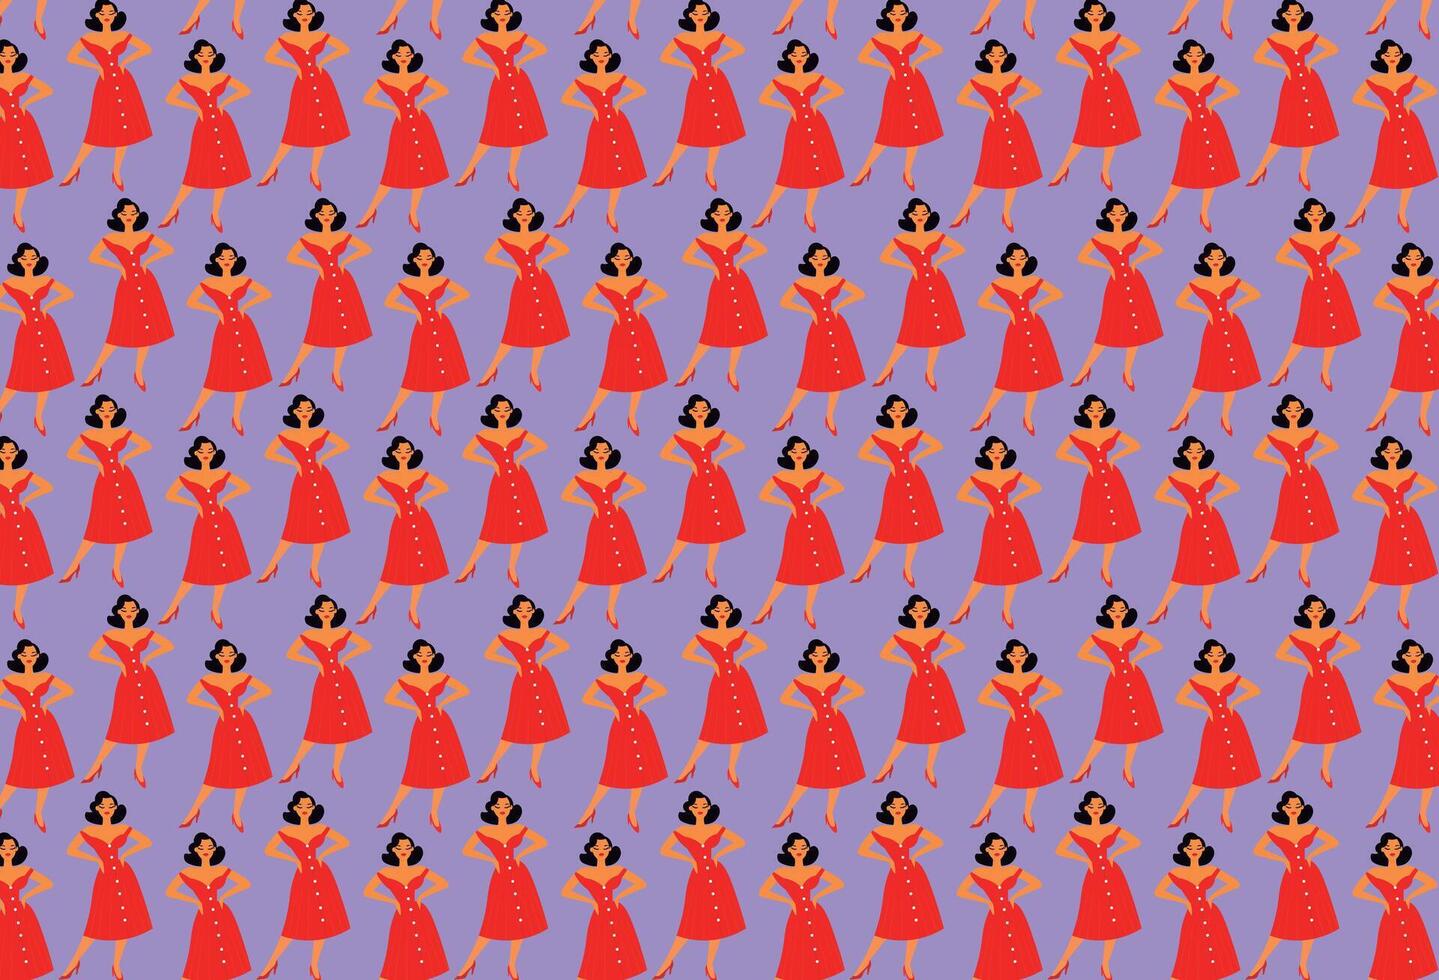 vastpinnen illustratie met rood jurk, patroon, voor achtergronden en texturen vector